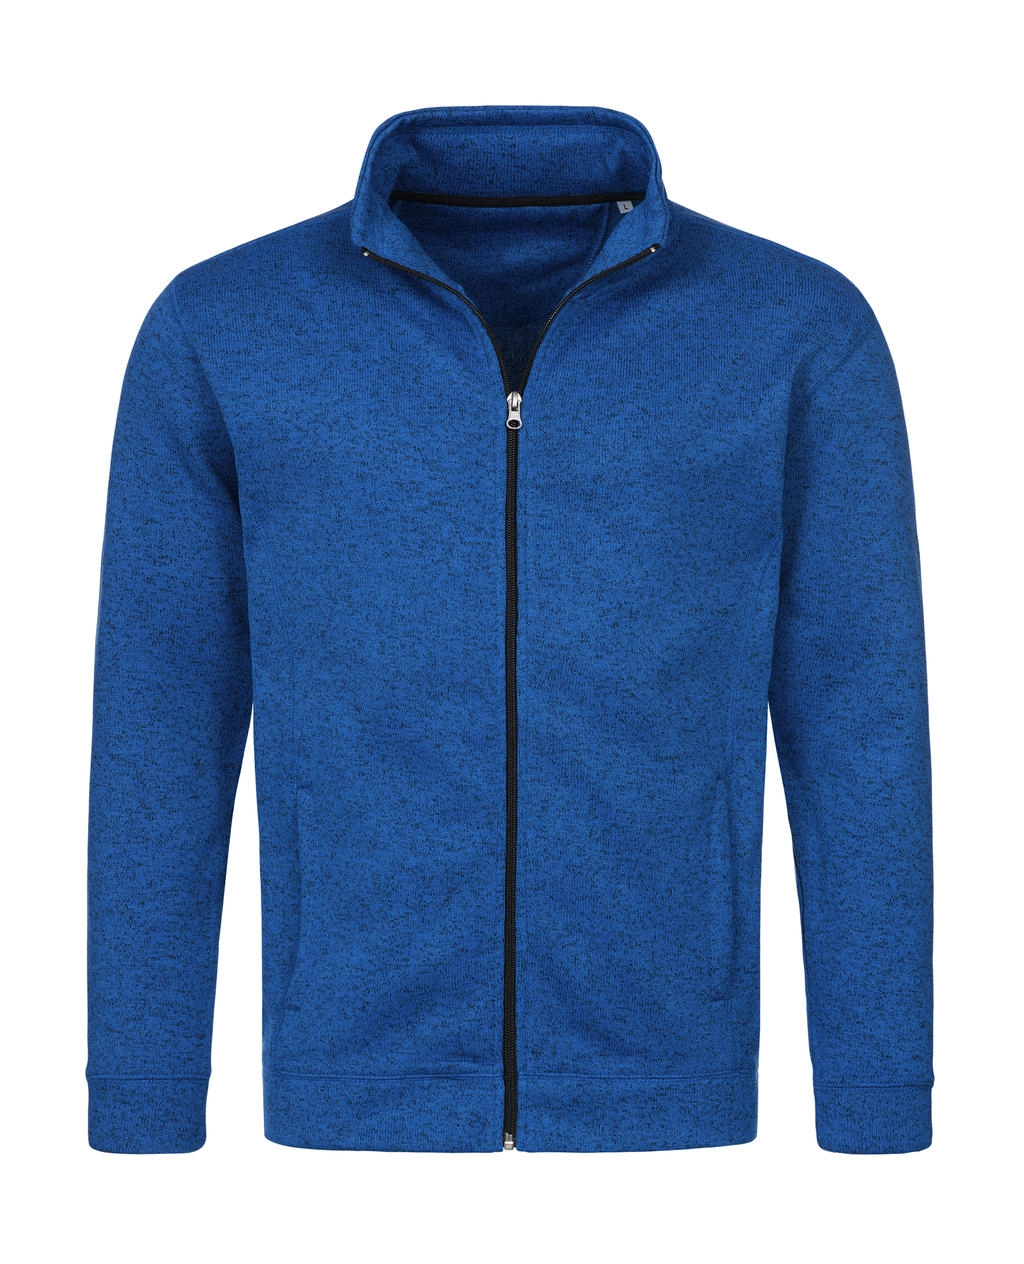 Knit Fleece Jacket zum Besticken und Bedrucken in der Farbe Blue Melange mit Ihren Logo, Schriftzug oder Motiv.